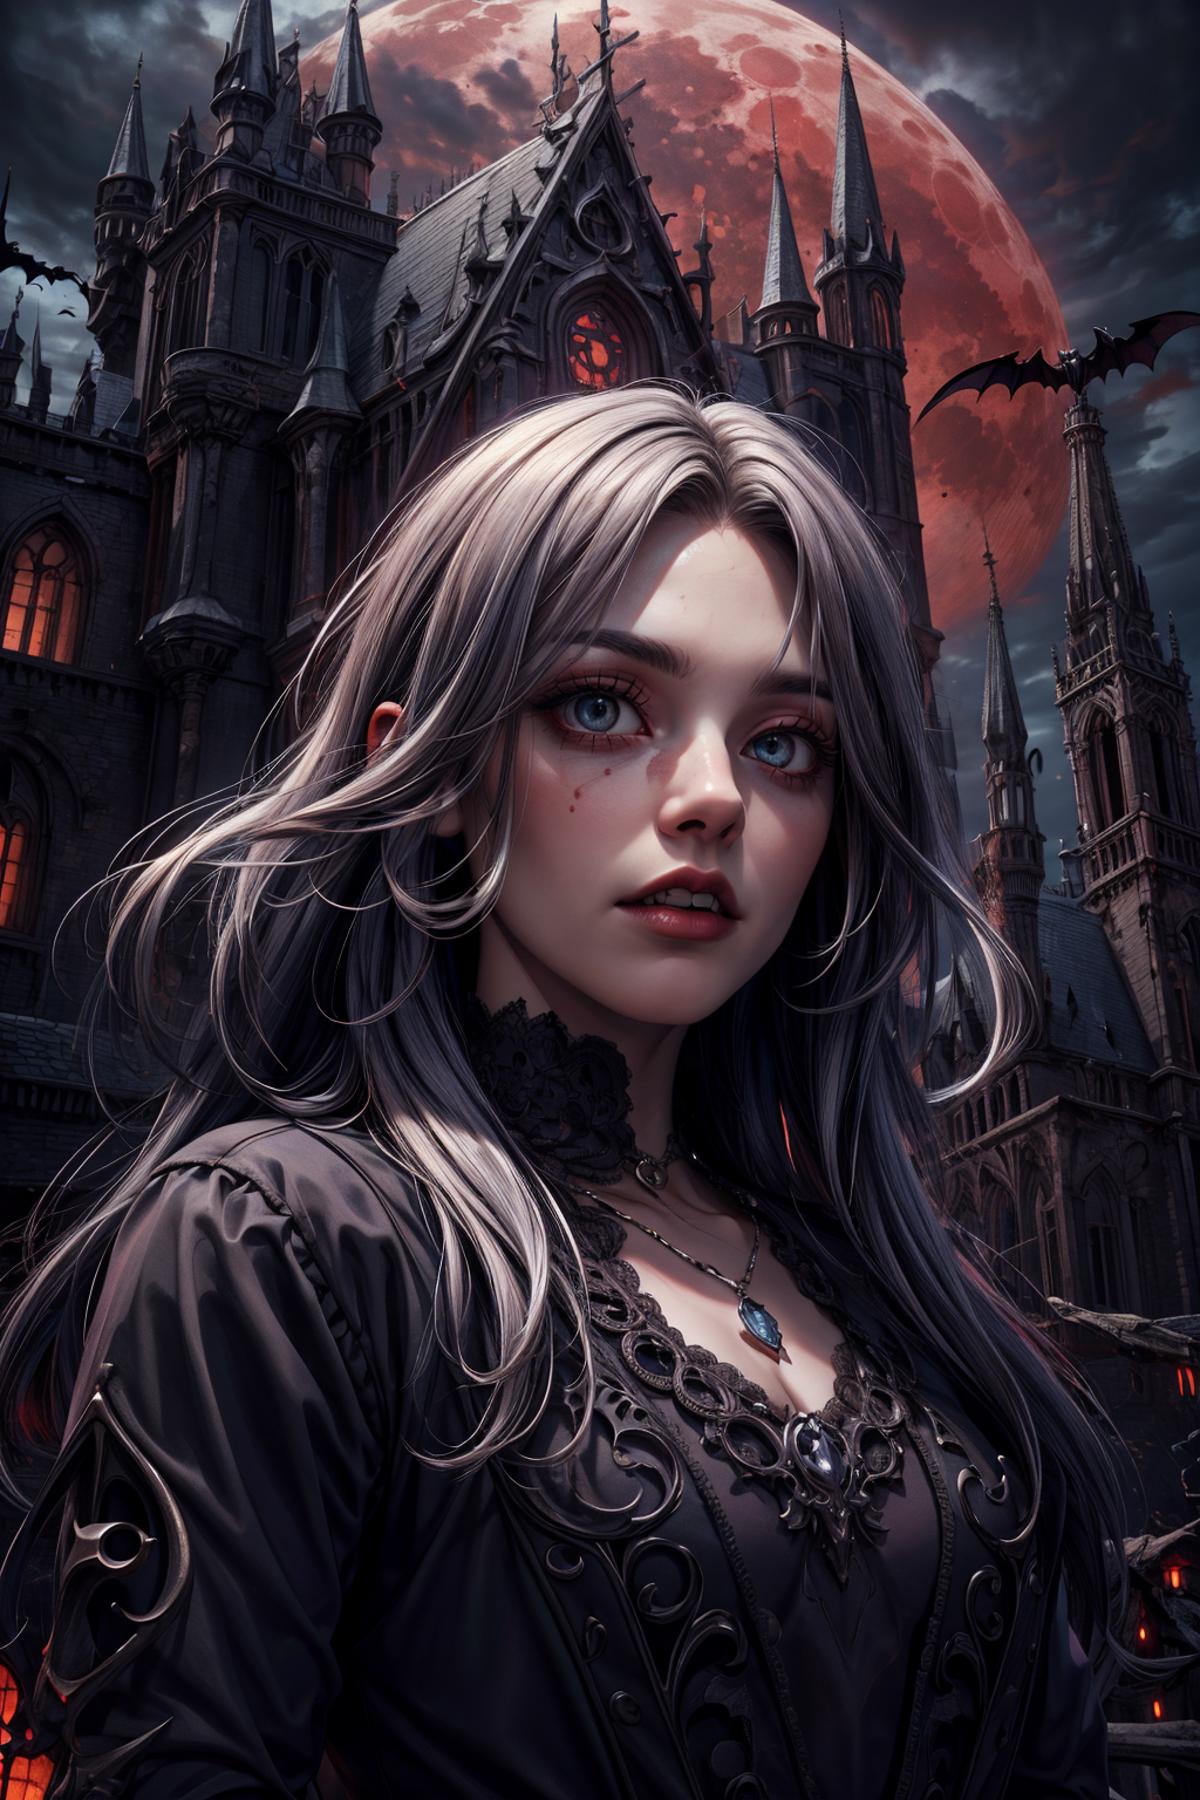 GothicHorrorAI image by TxcTrtl